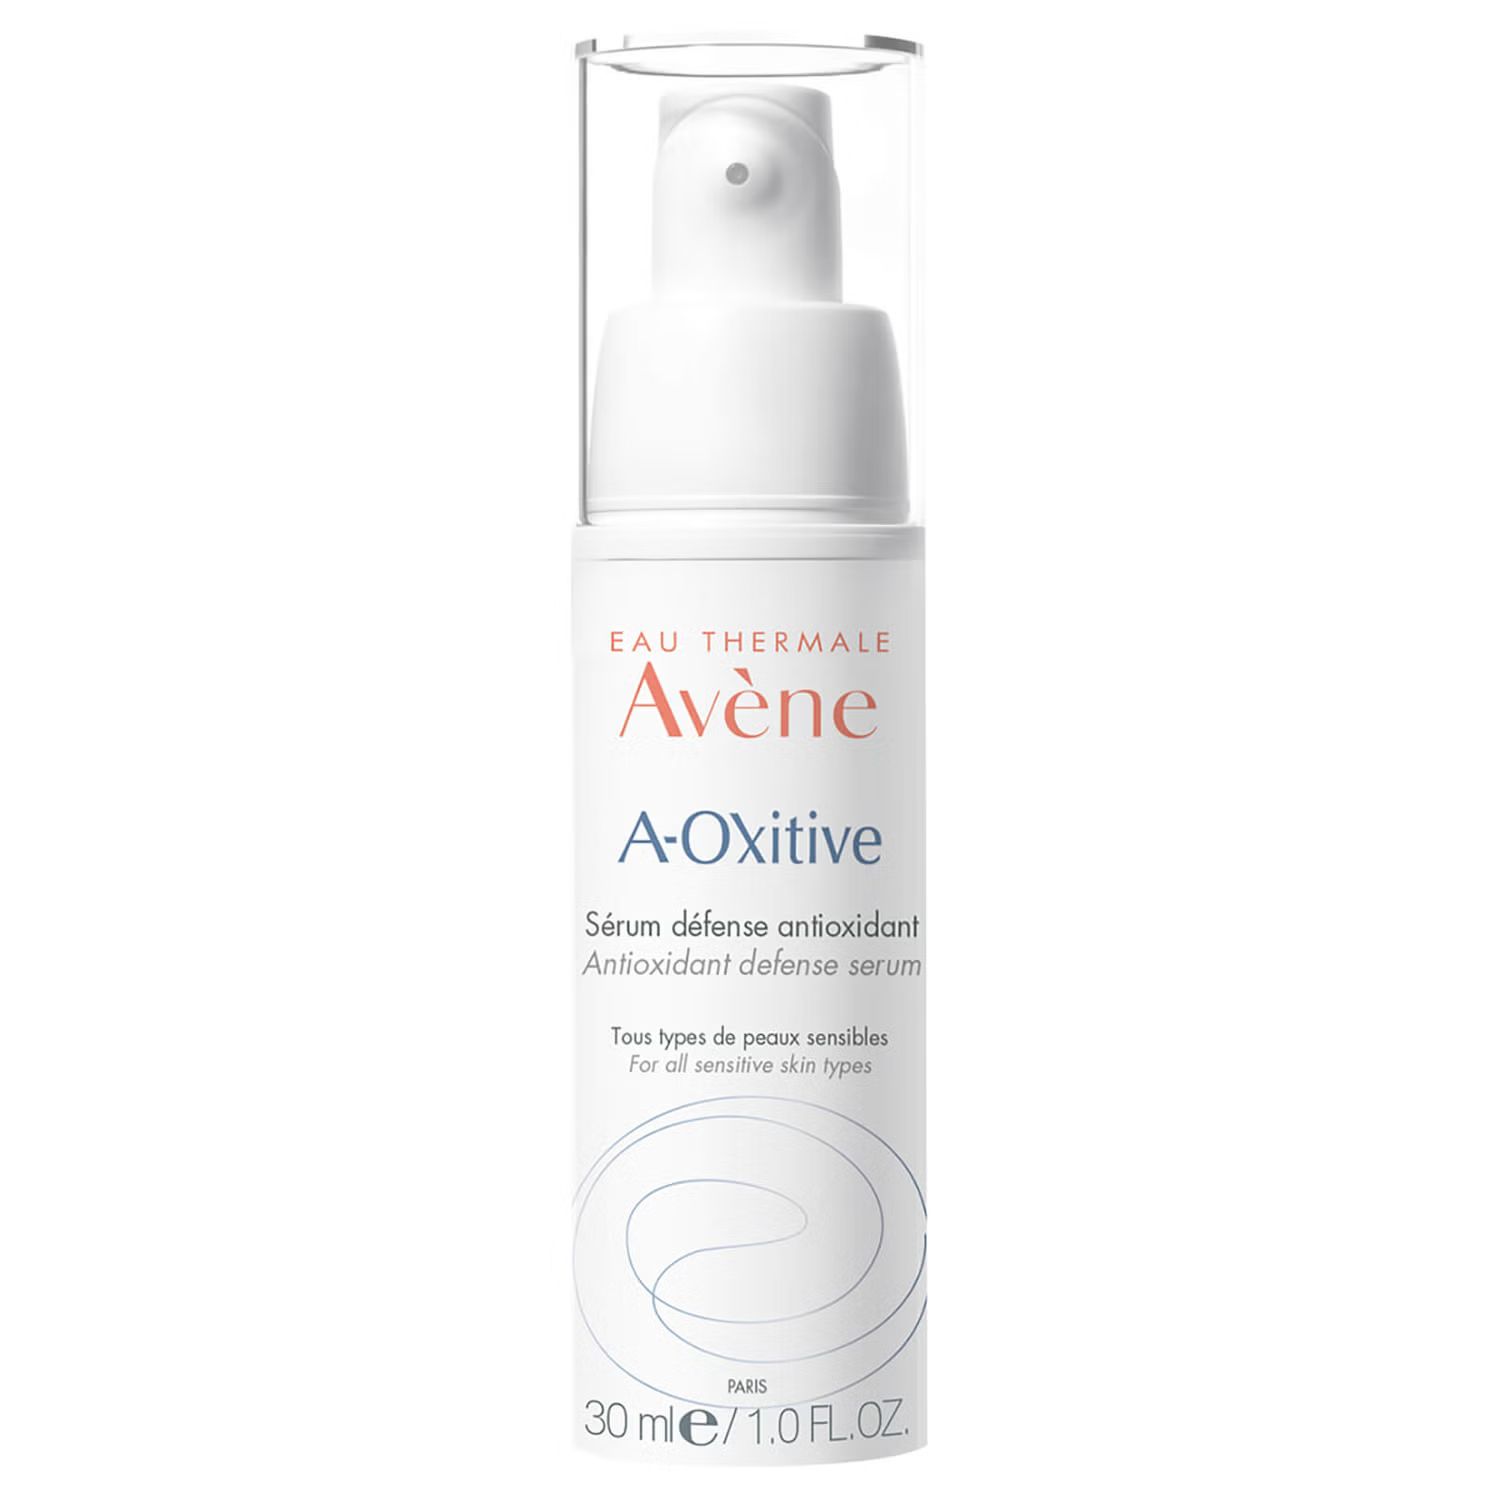 Avène A-Oxitive Antioxidant Defense Serum 1.0 fl.oz | Skinstore